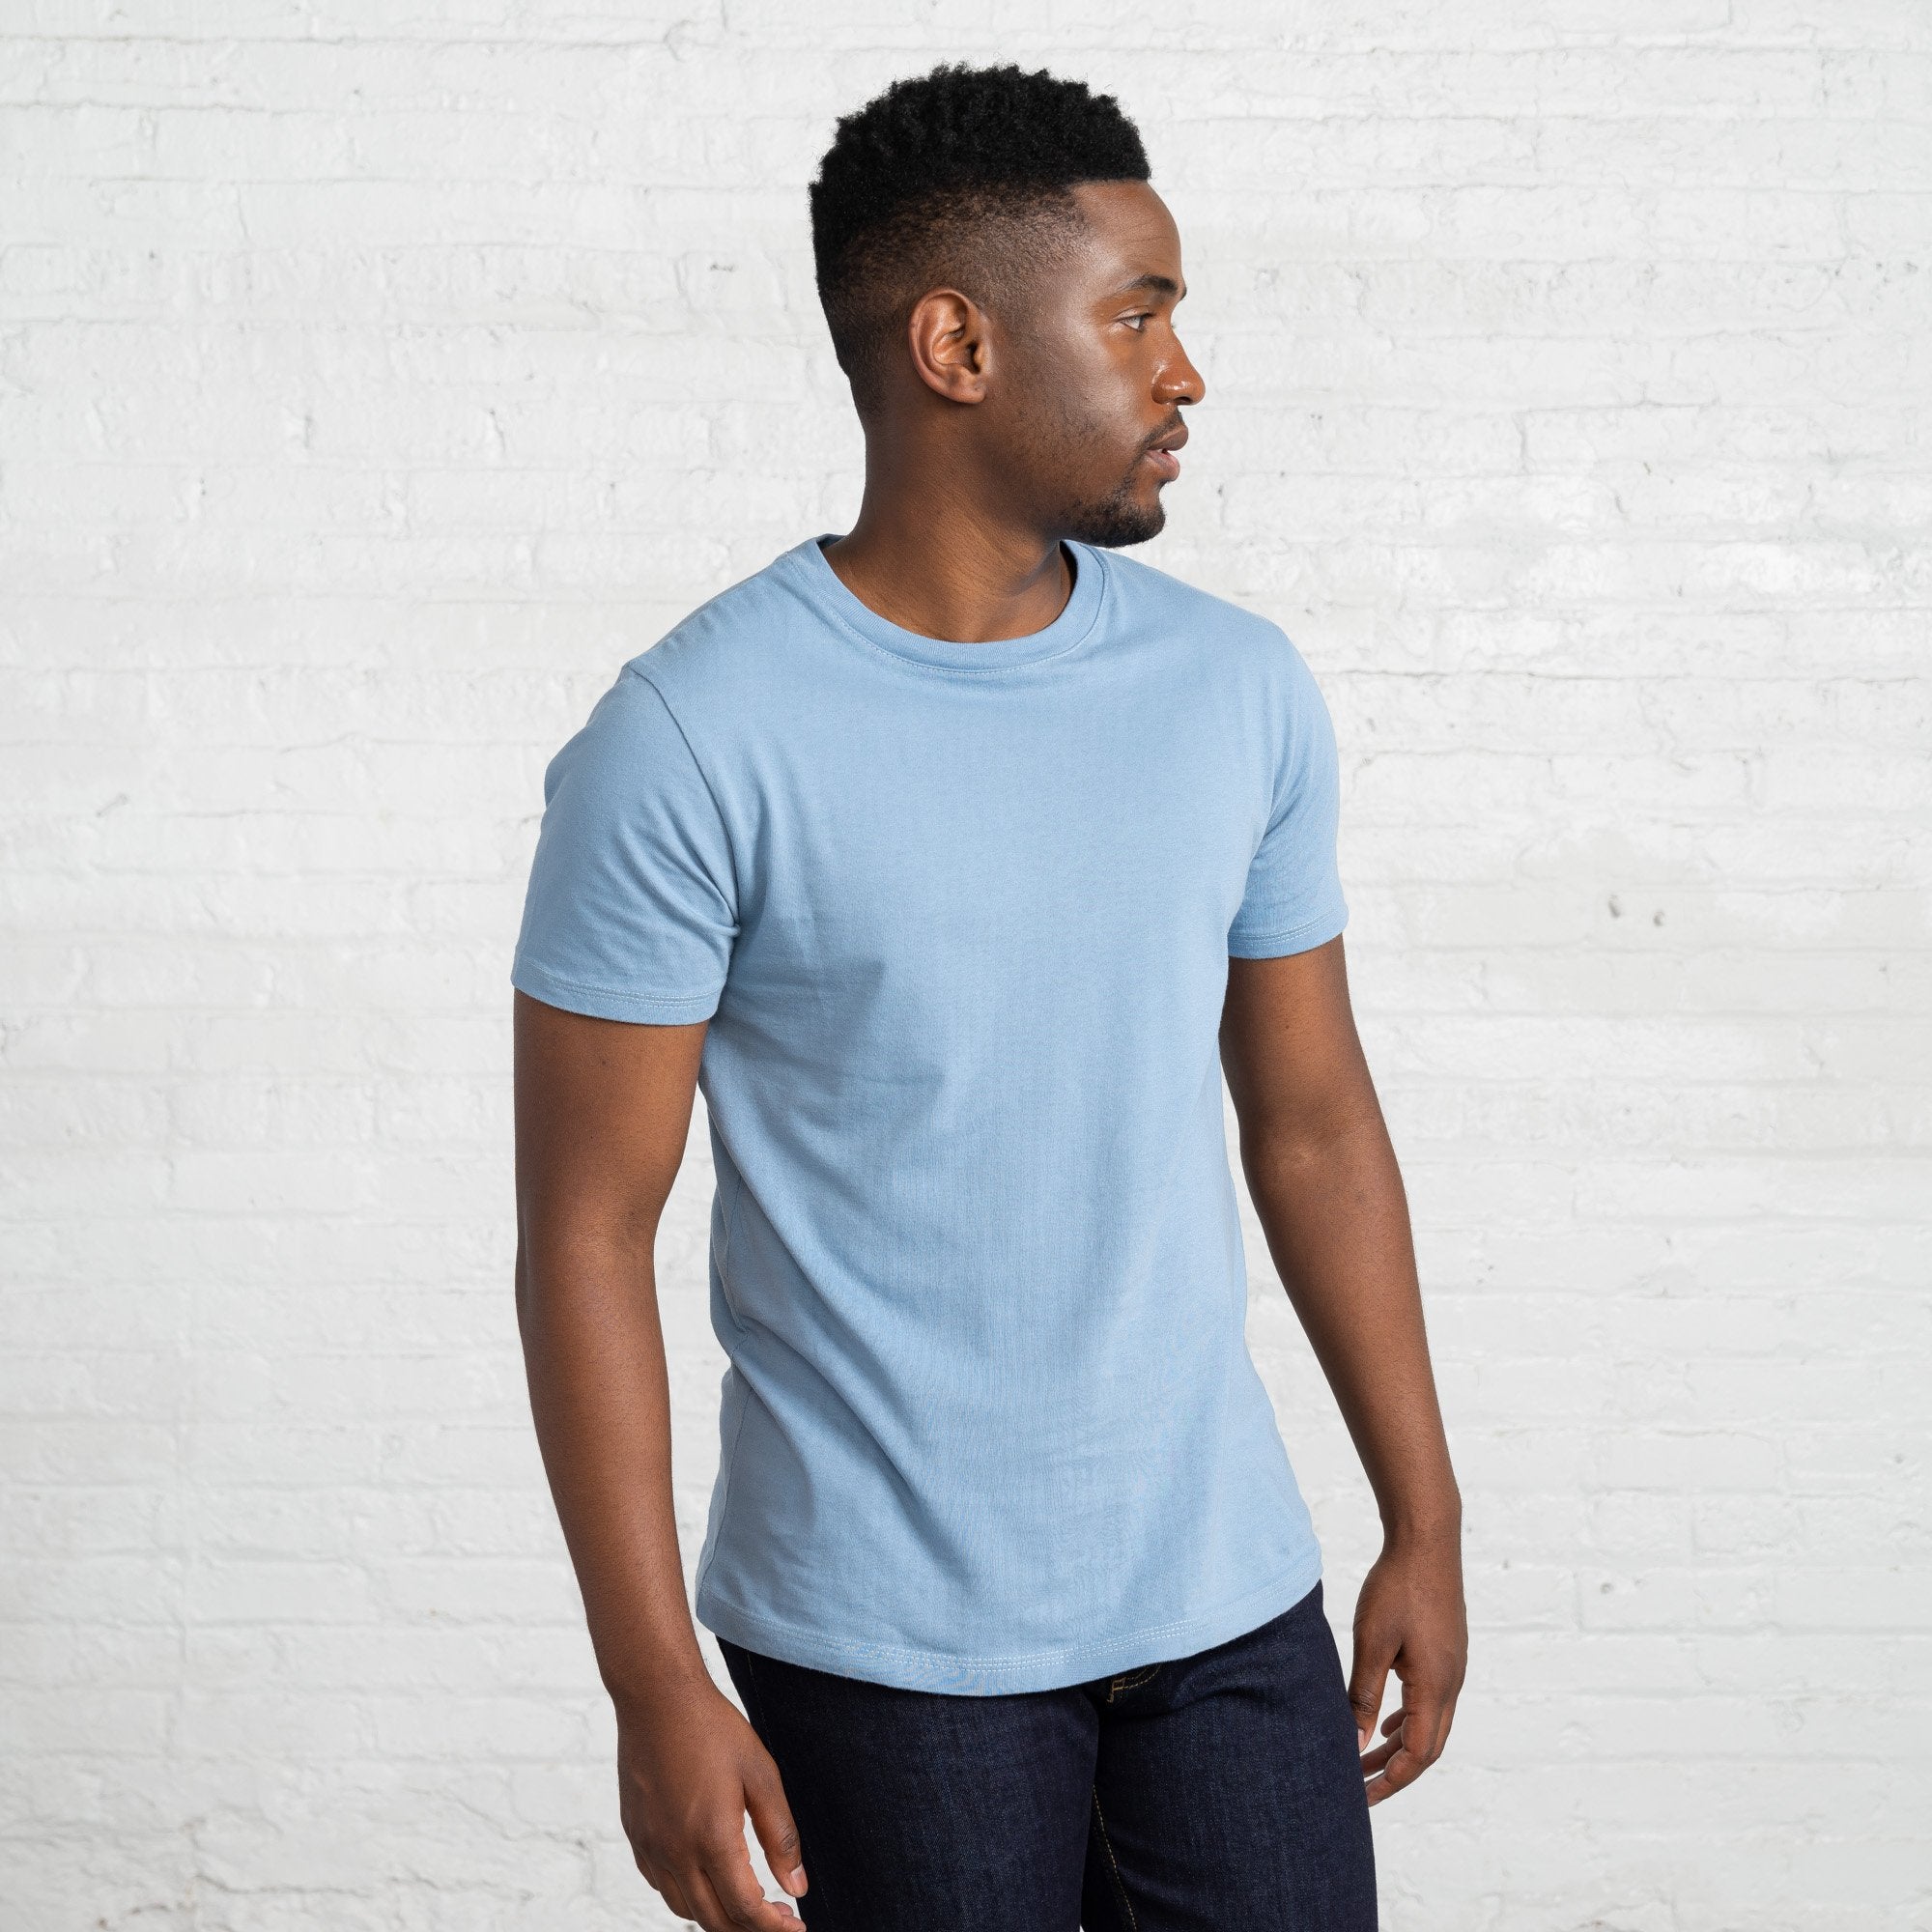 Color:Light Blue classic combed cotton men's t-shirts